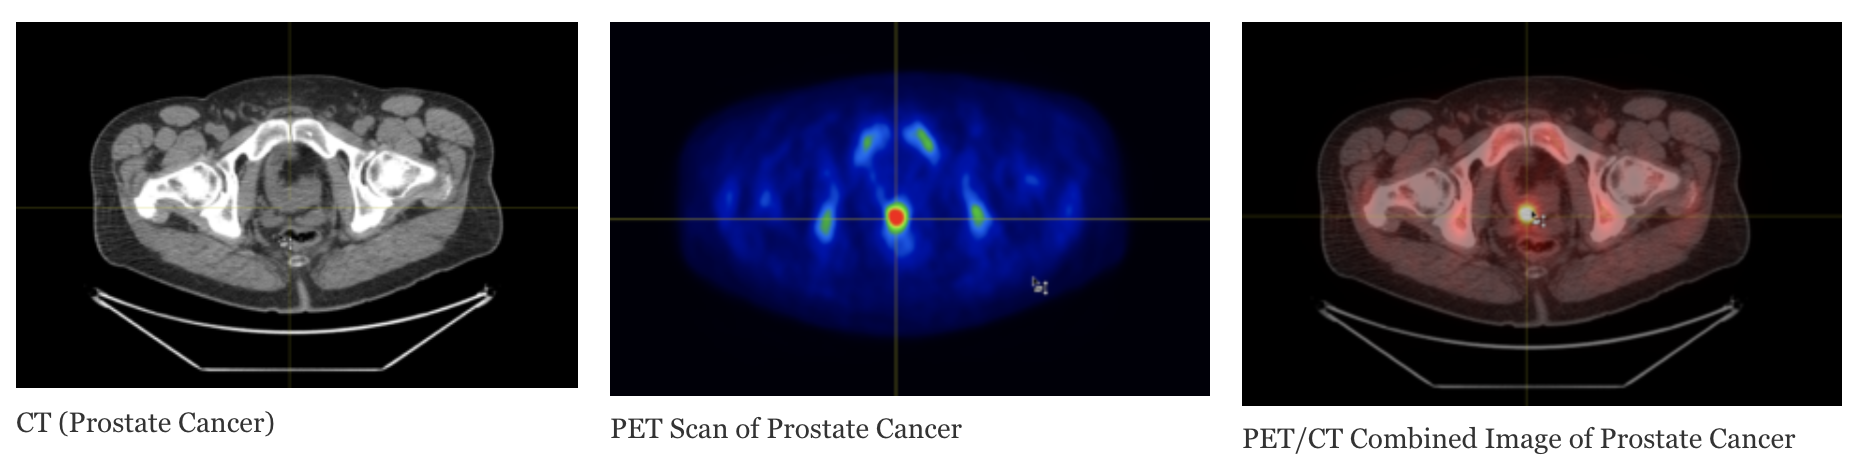 Despre cancerul de prostată - UROCLINIC - Clinica de Urologie Craiova